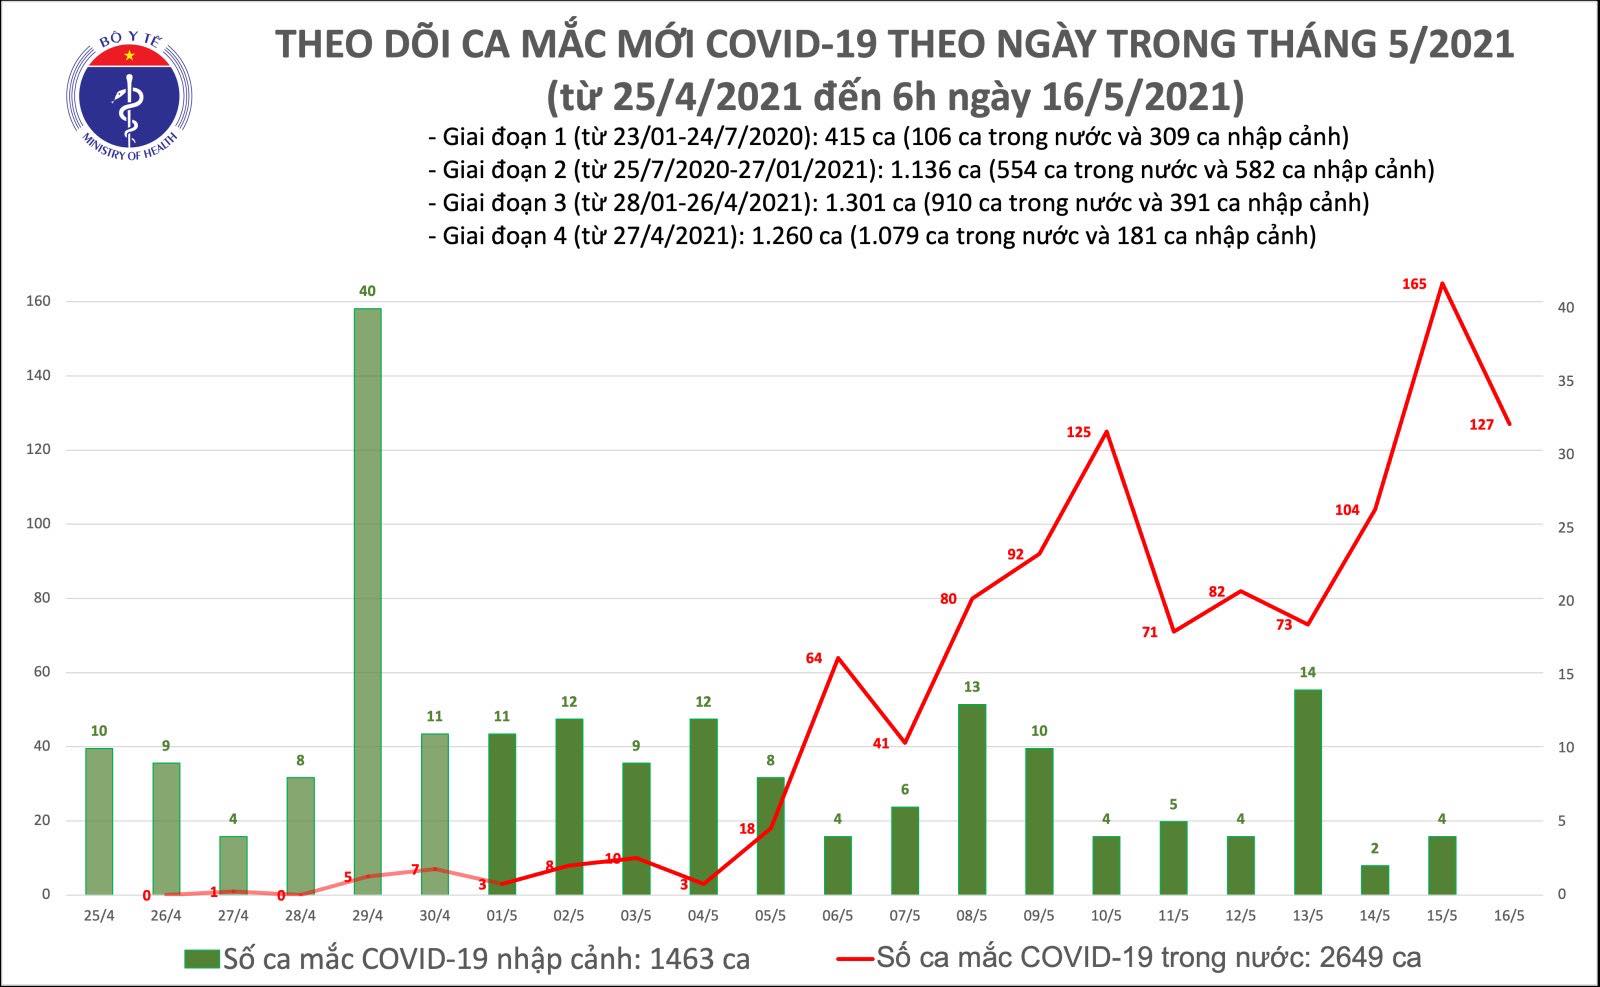 12h trôi qua: Thêm 127 ca mắc COVID-19 trong nước, riêng Bắc Giang 98 ca